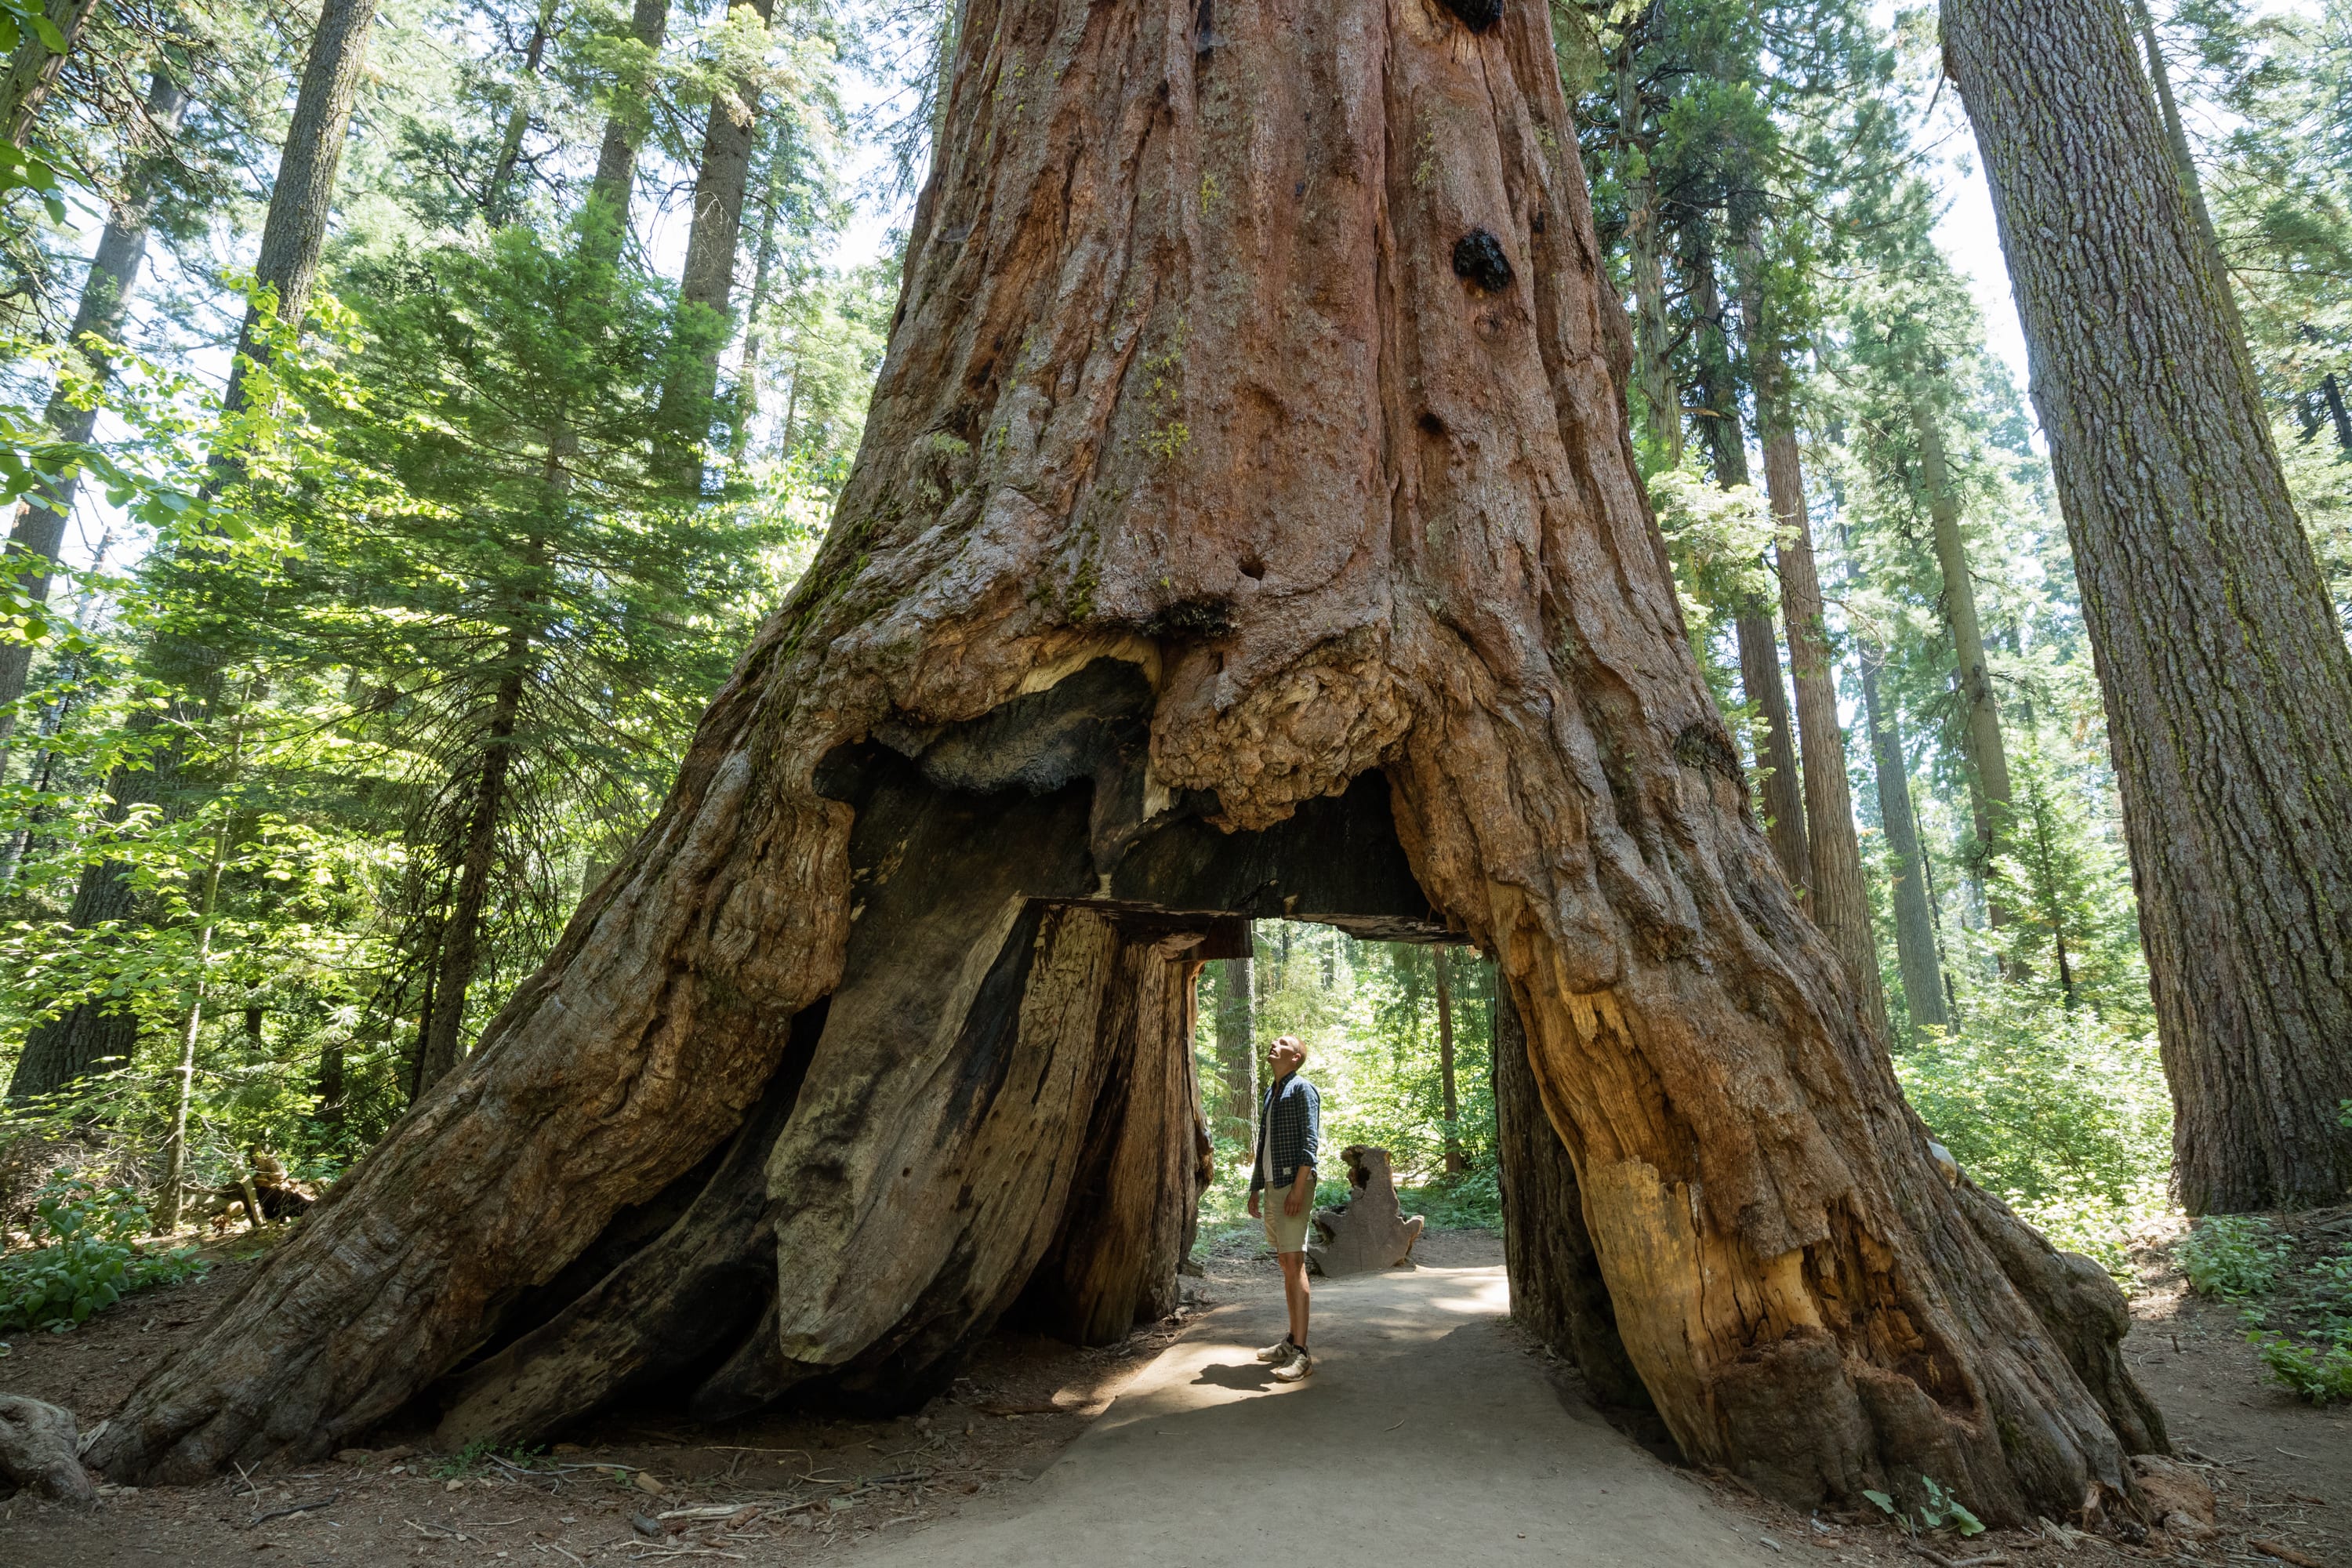 Самое высокое дерево на земле природная зона. Секвойя дерево. Калифорнийская Секвойя Гиперион. Секвойя парк США. Секвойя Редвуд.